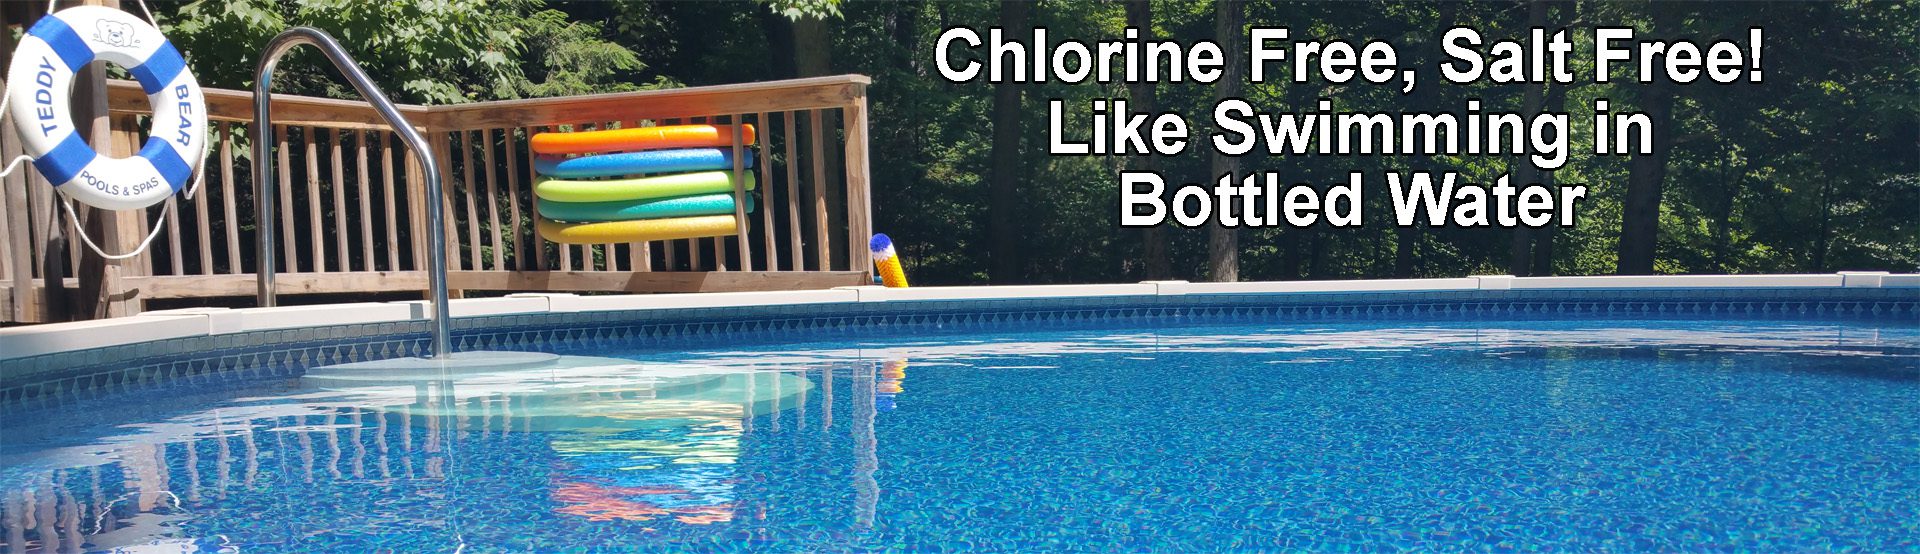 Chlorine Free Pool